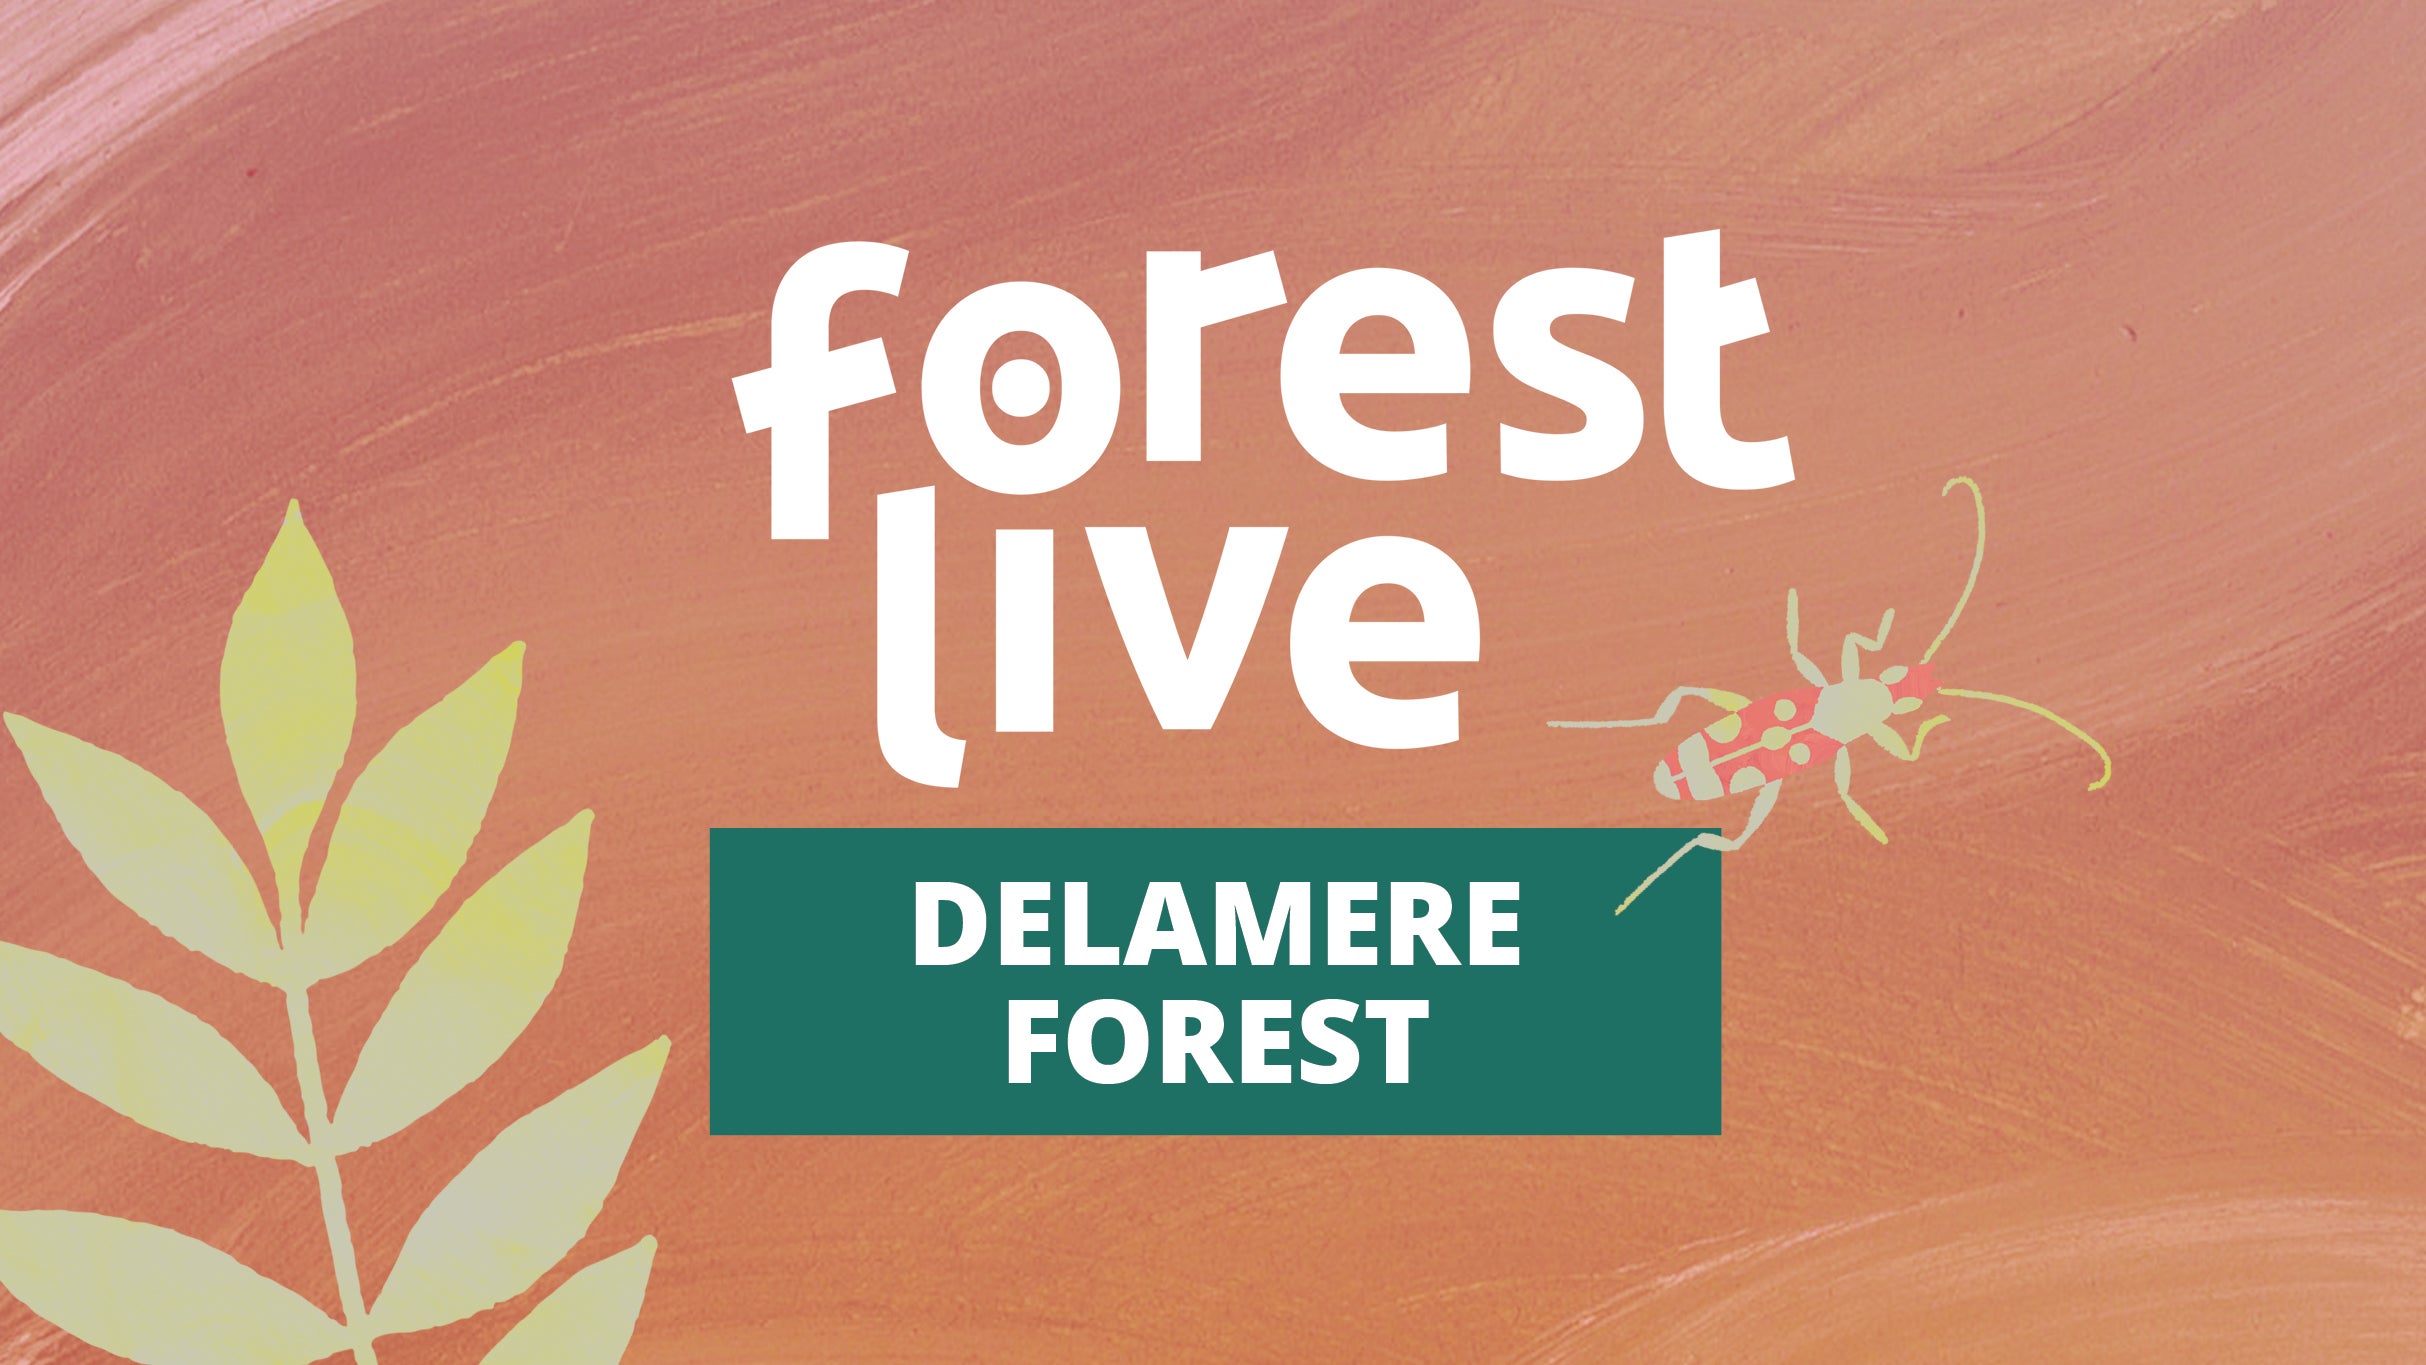 Delamere Forest presale information on freepresalepasswords.com